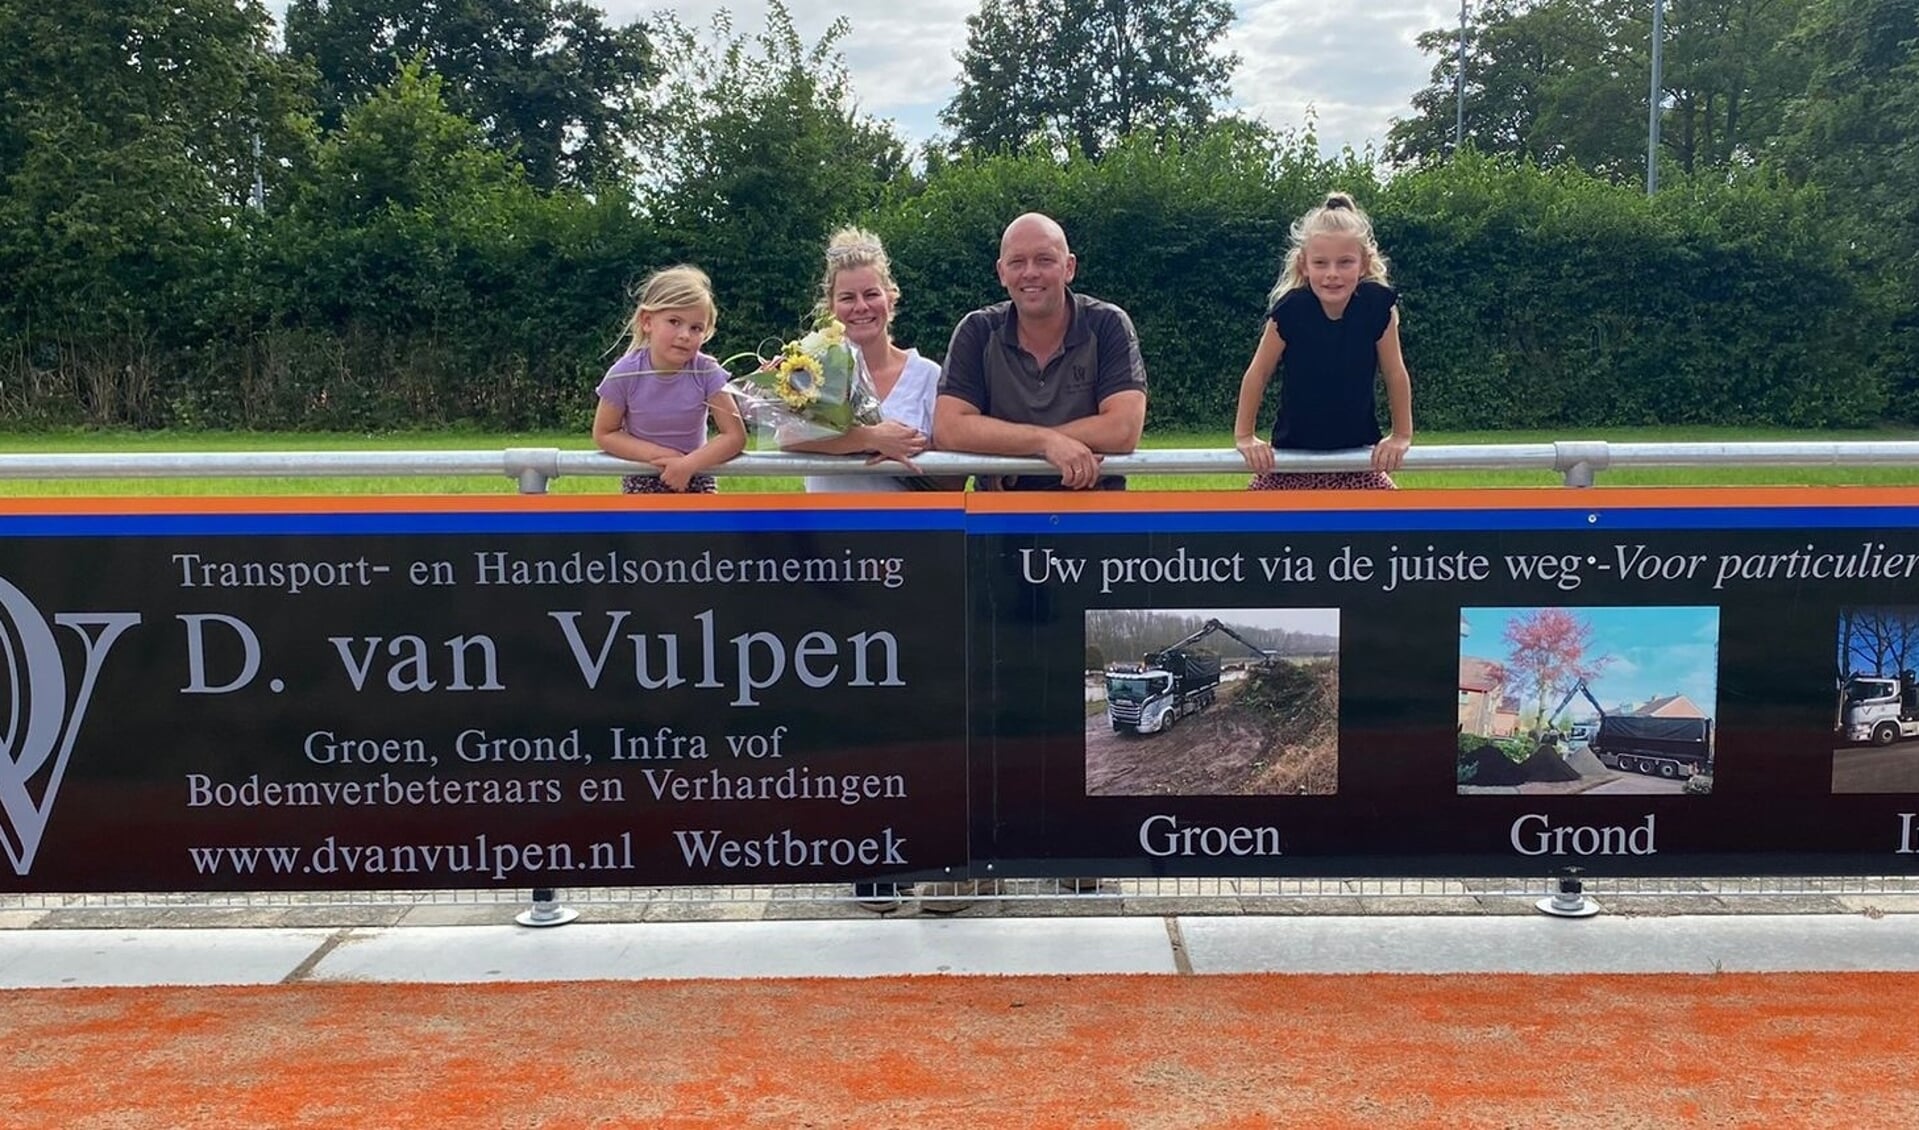 Dirk en Anette van Vulpen met hun beide dochters bij de twee borden.